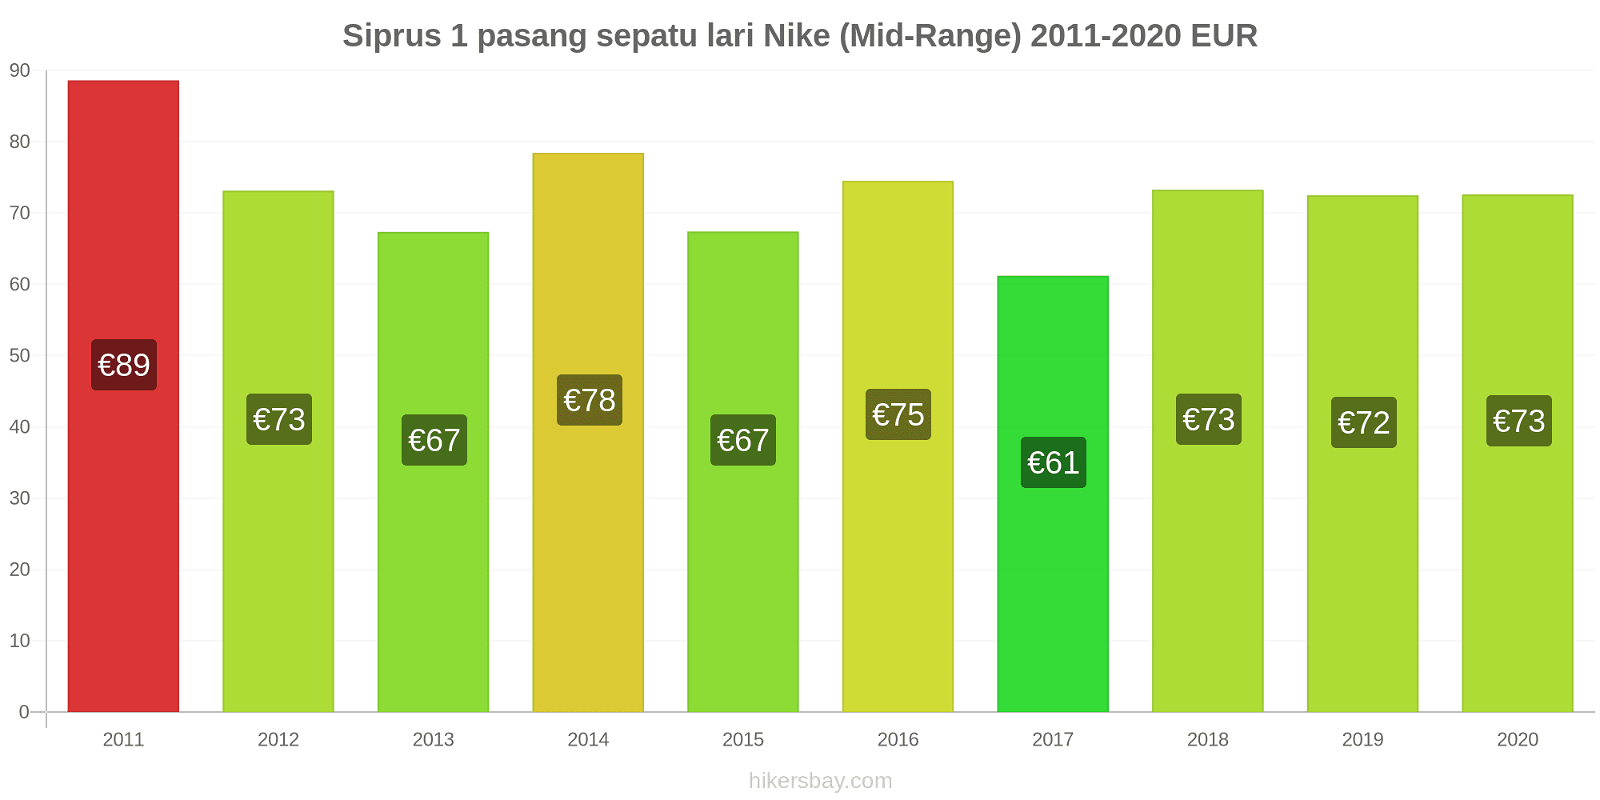 Siprus perubahan harga 1 pasang sepatu lari Nike (Mid-Range) hikersbay.com